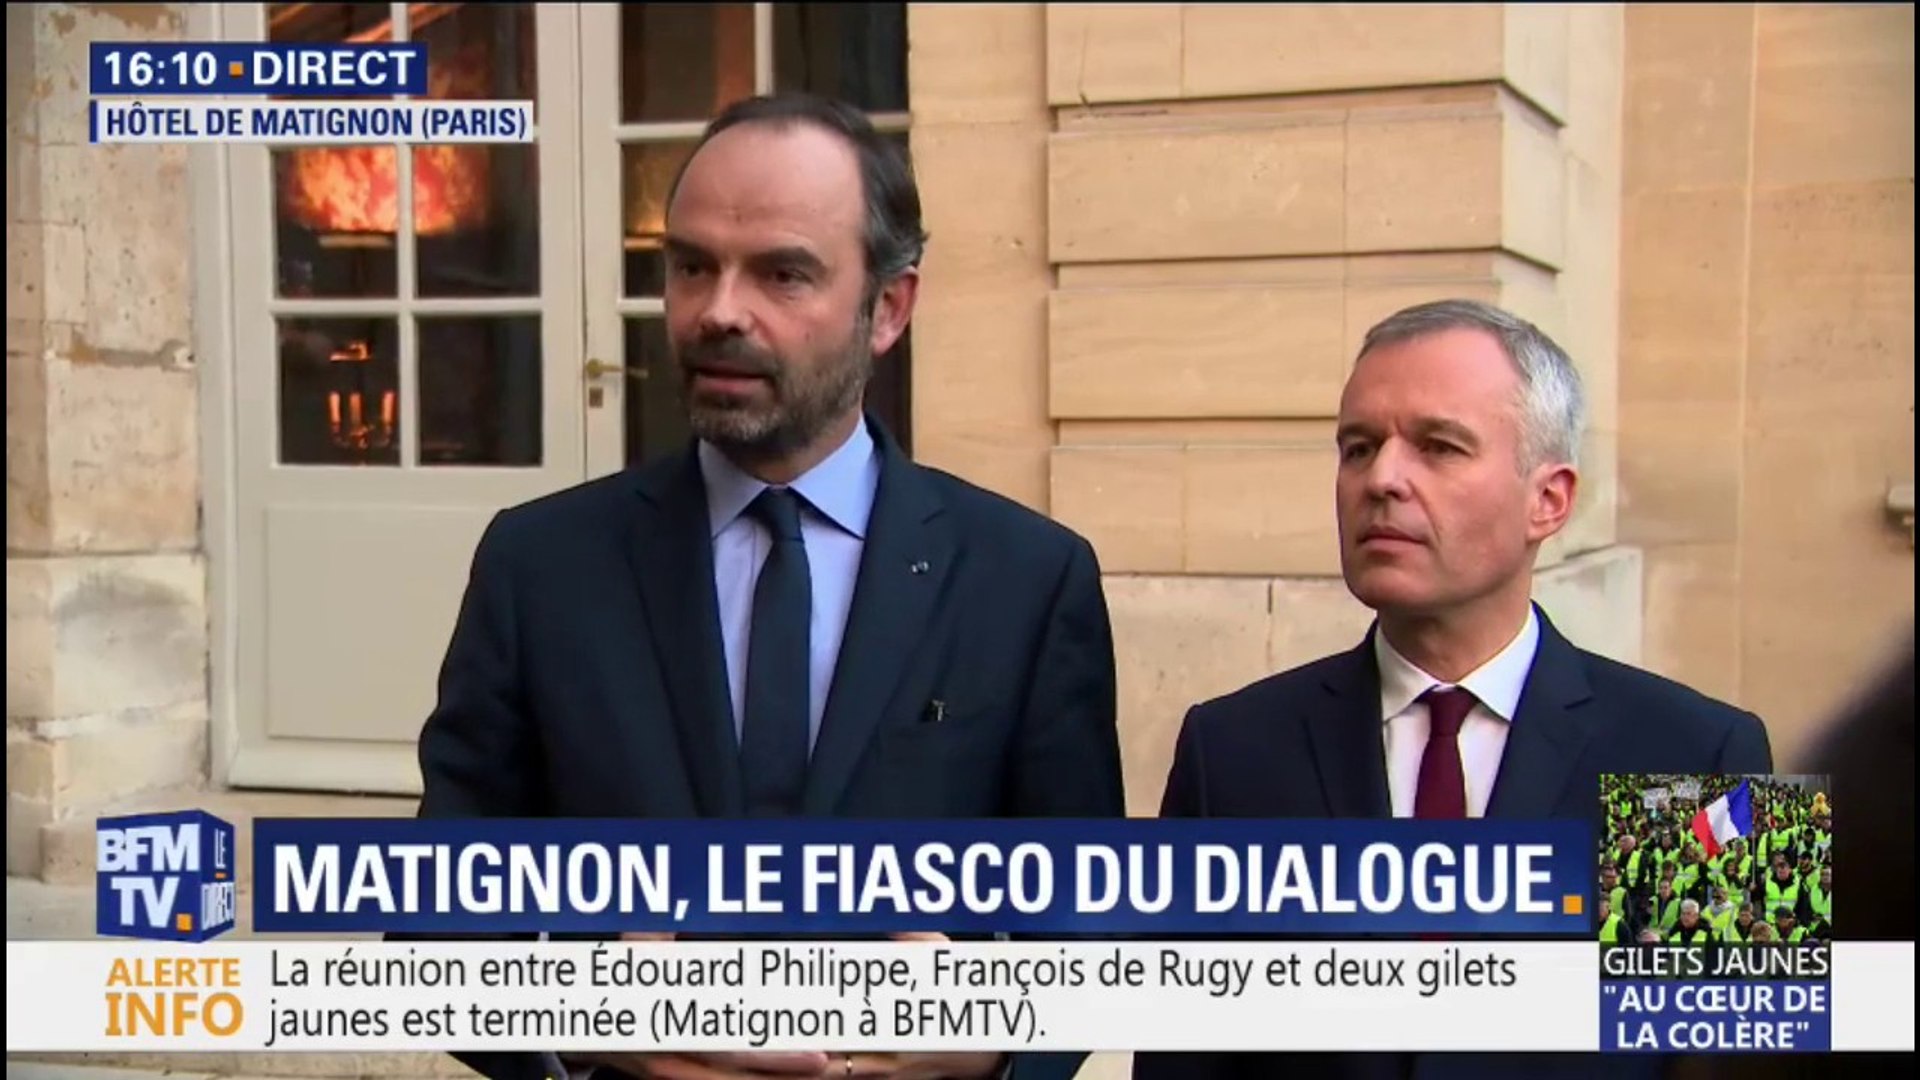 Dialogue avec les gilets jaunes: "la porte de Matignon restera toujours  ouverte" affirme Édouard Philippe - Vidéo Dailymotion